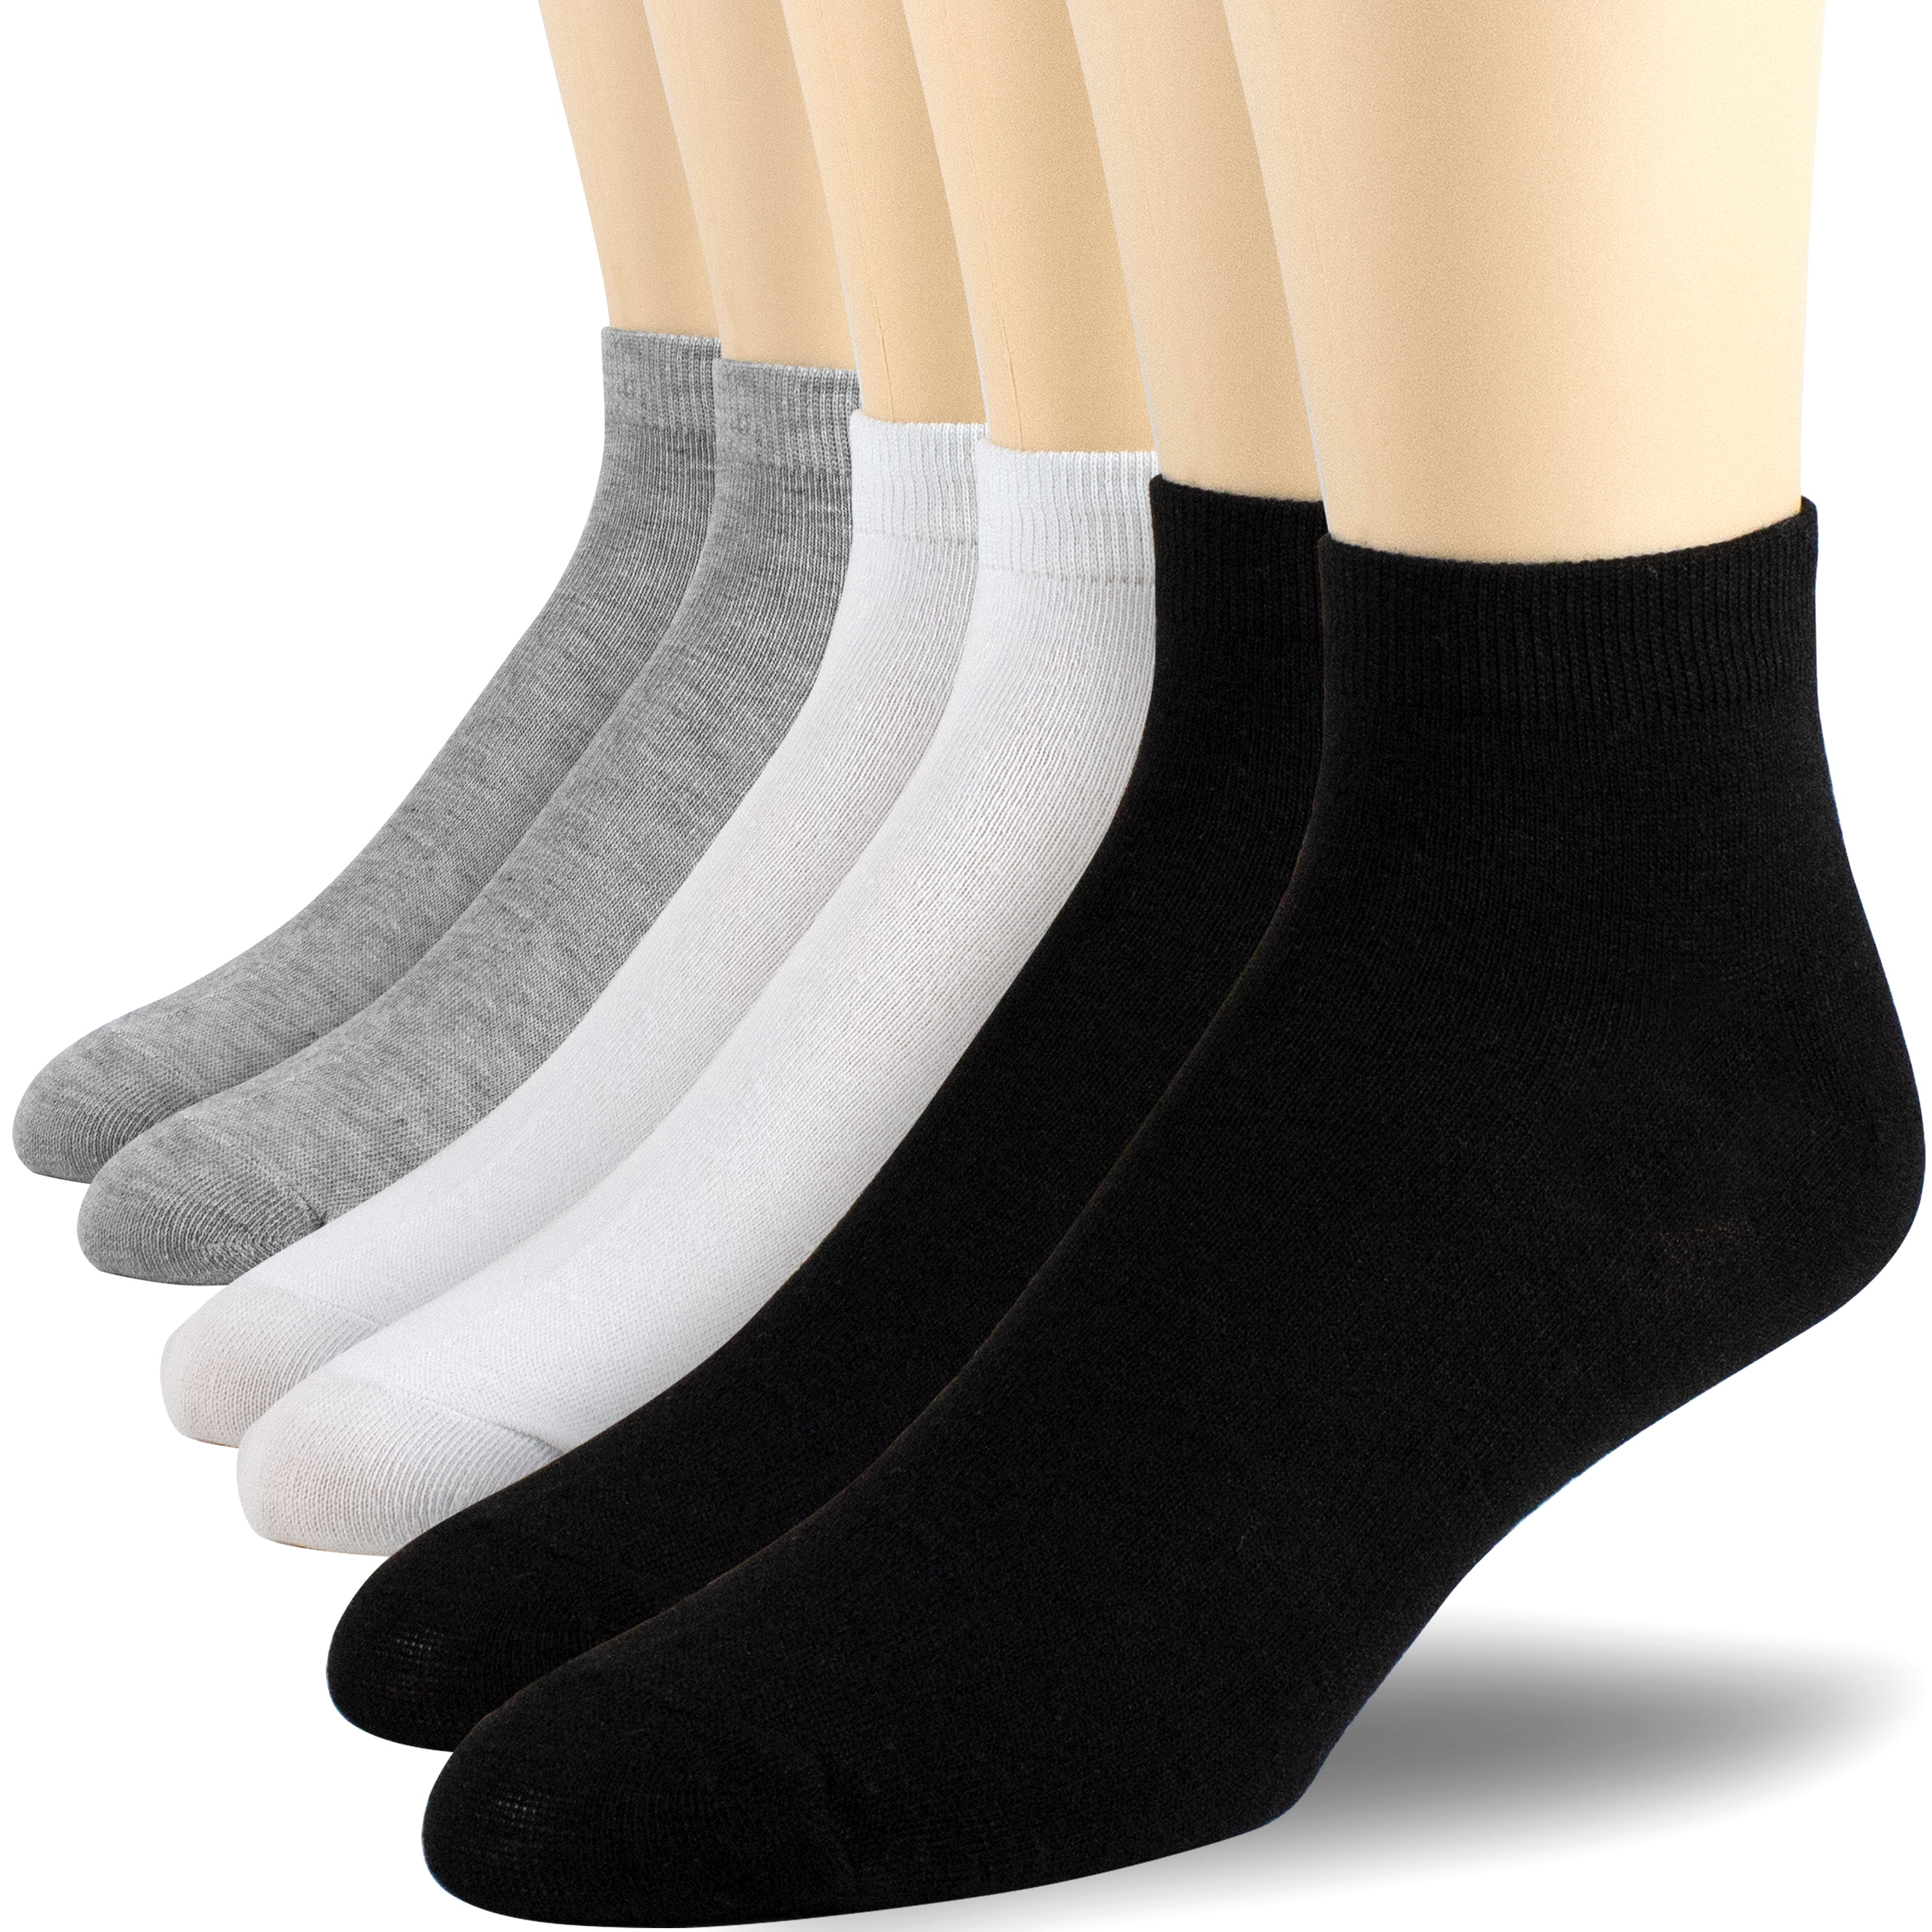 Wholesale Mix Color Cat Men's Ankle Quarter Sport Socks Cotton Size 9-11 10-13 